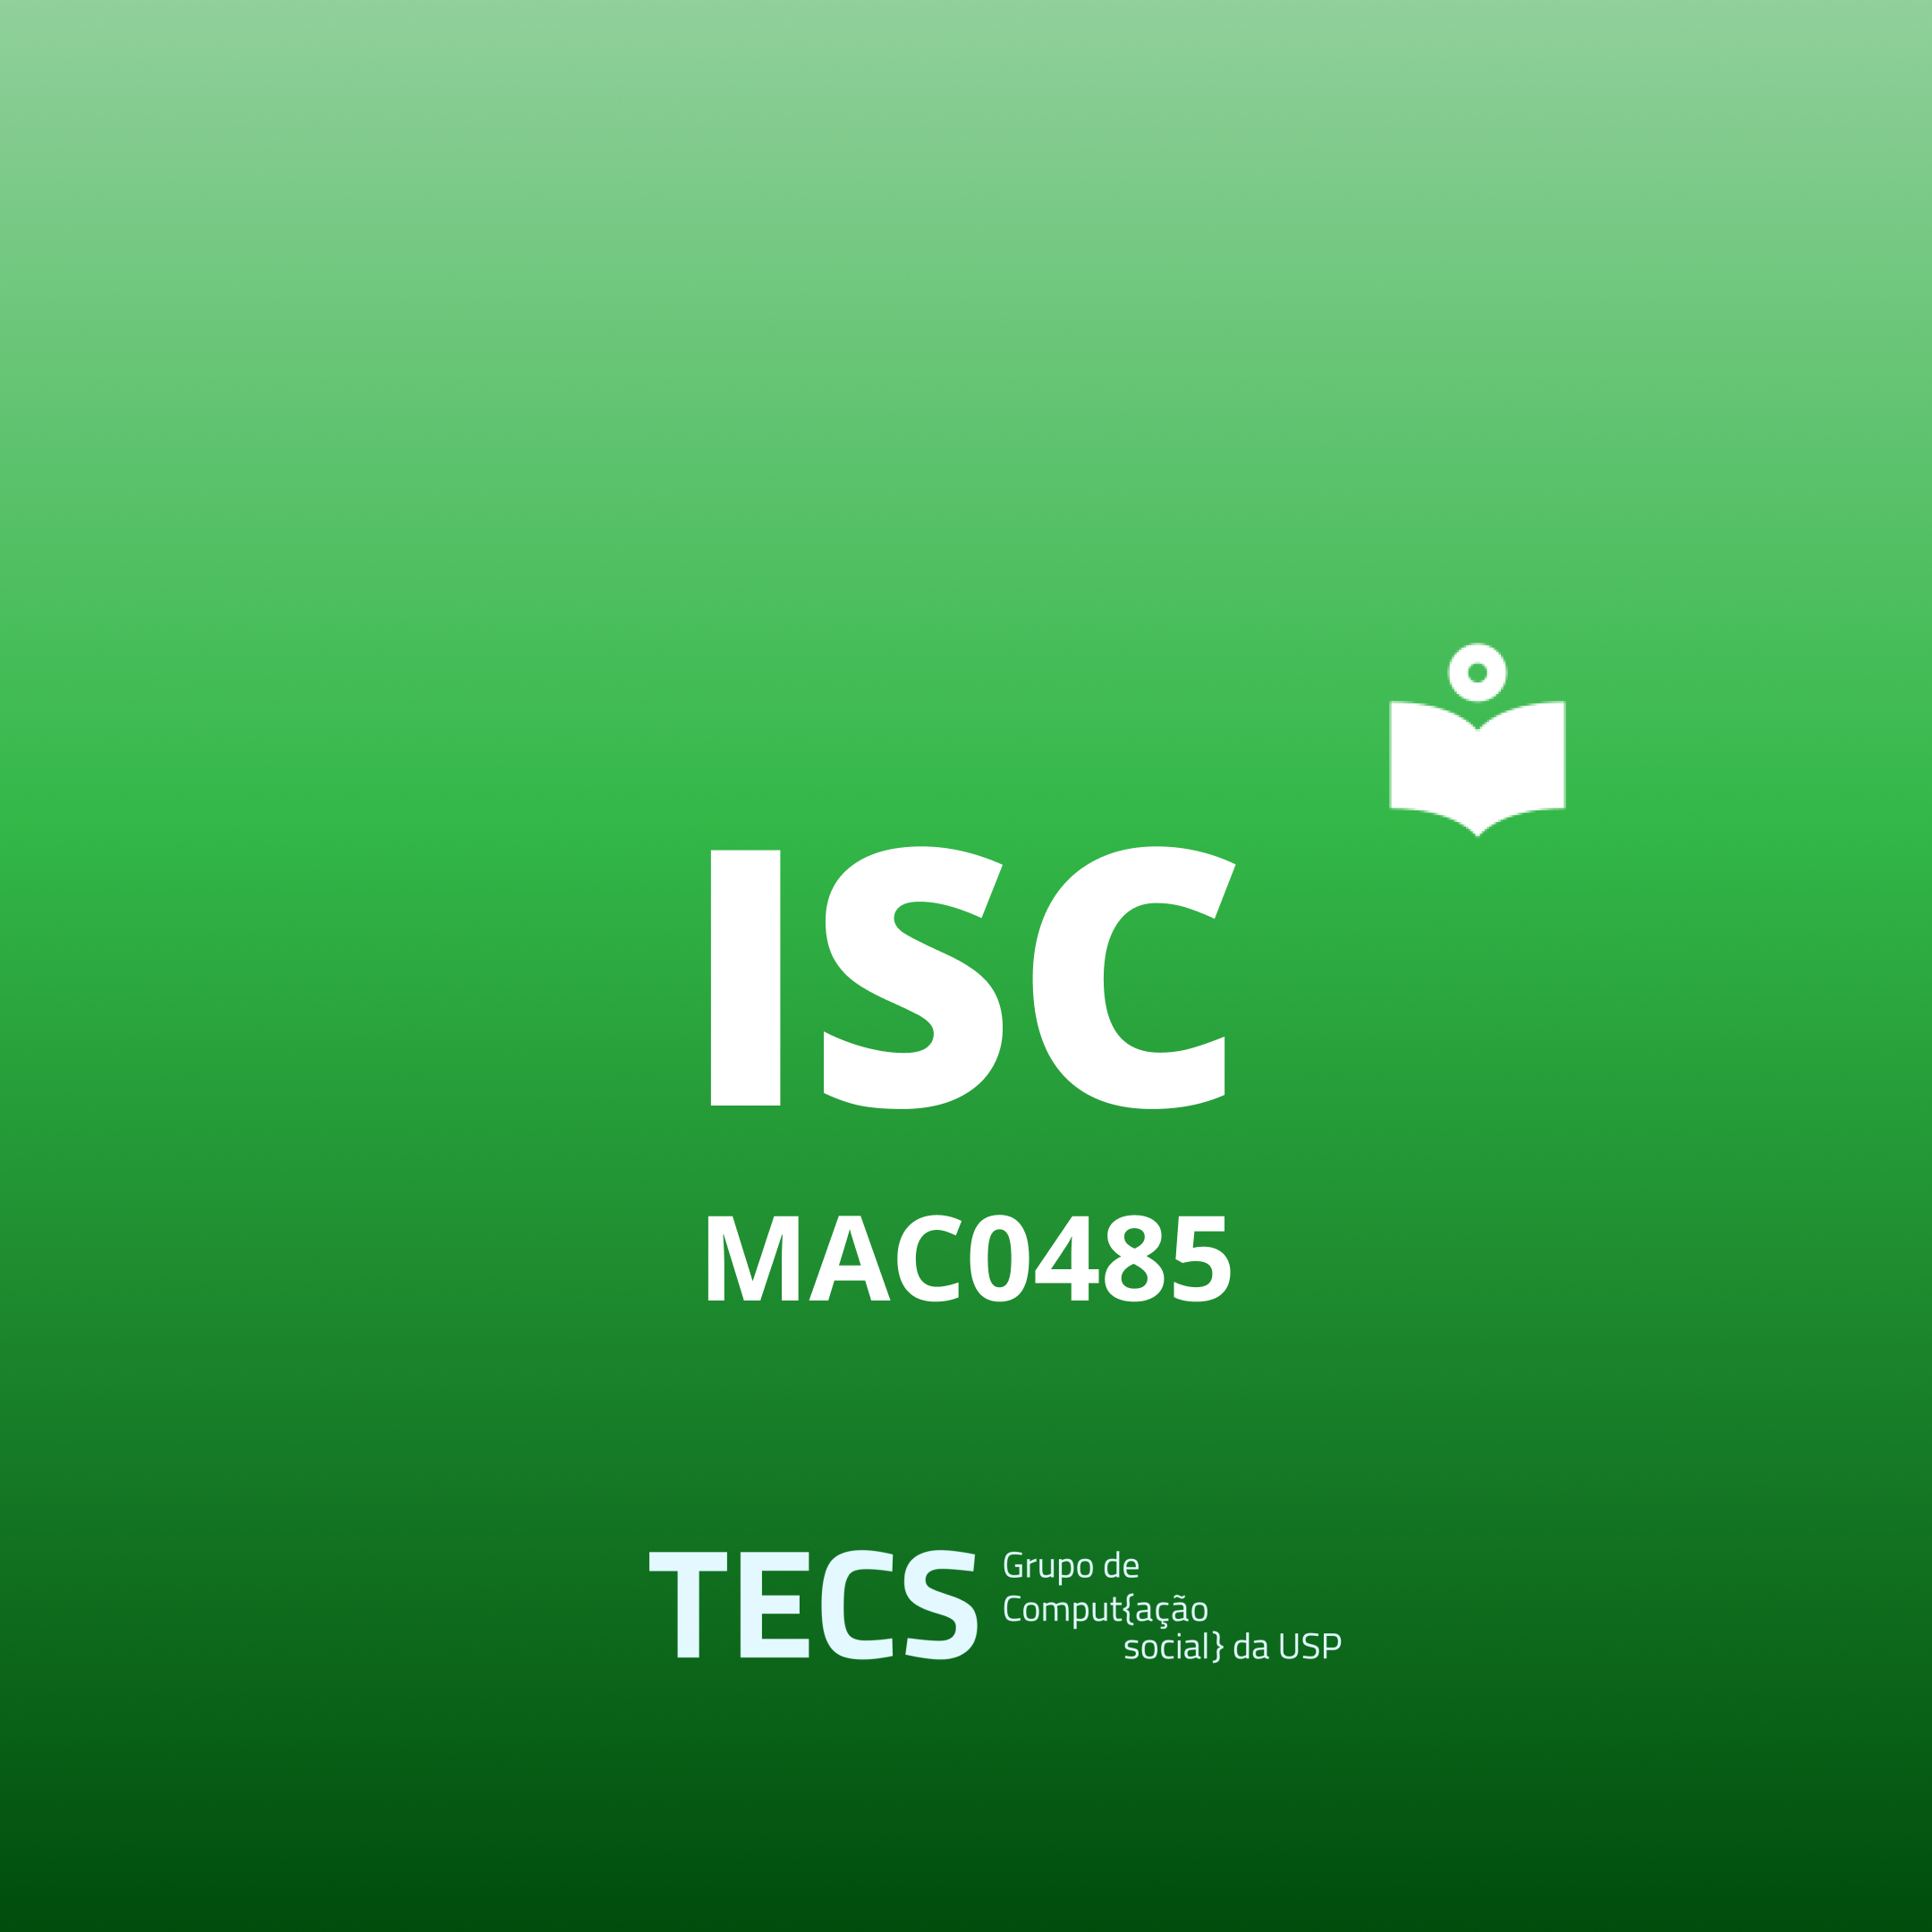 Ícone com 'ISC — MAC0485' escrito sobre um fundo escuro.